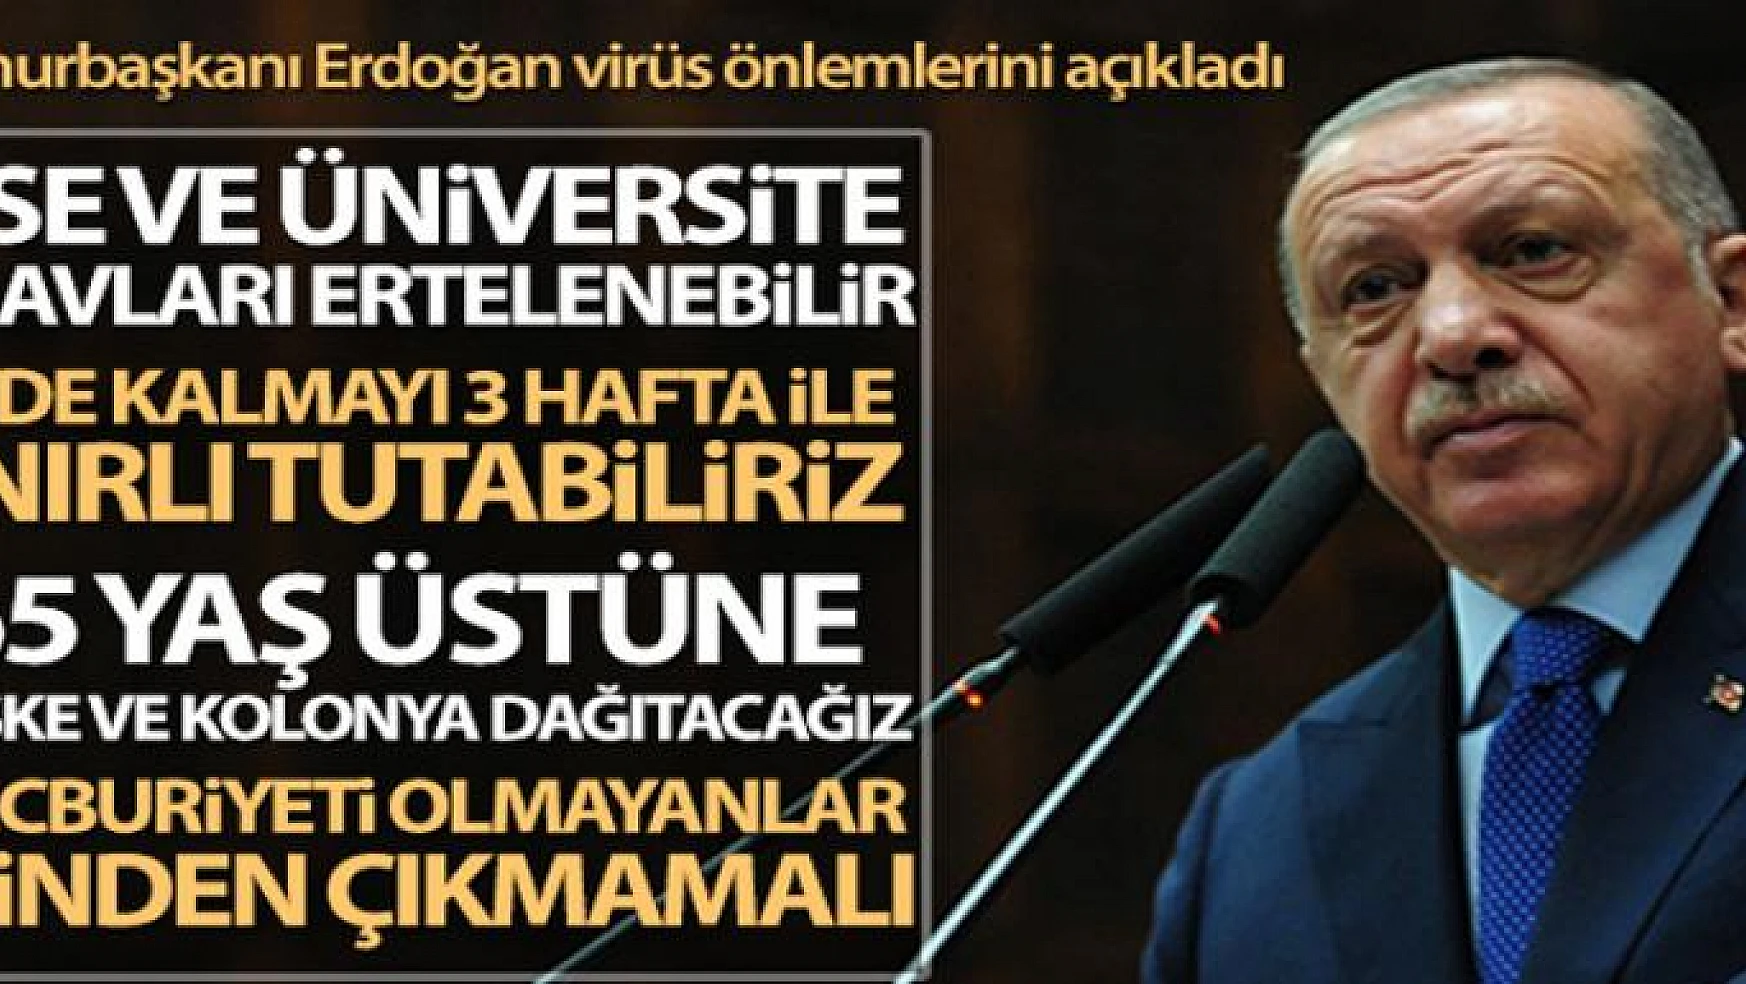 Cumhurbaşkanı Erdoğan korona virüs önlemlerini açıkladı!